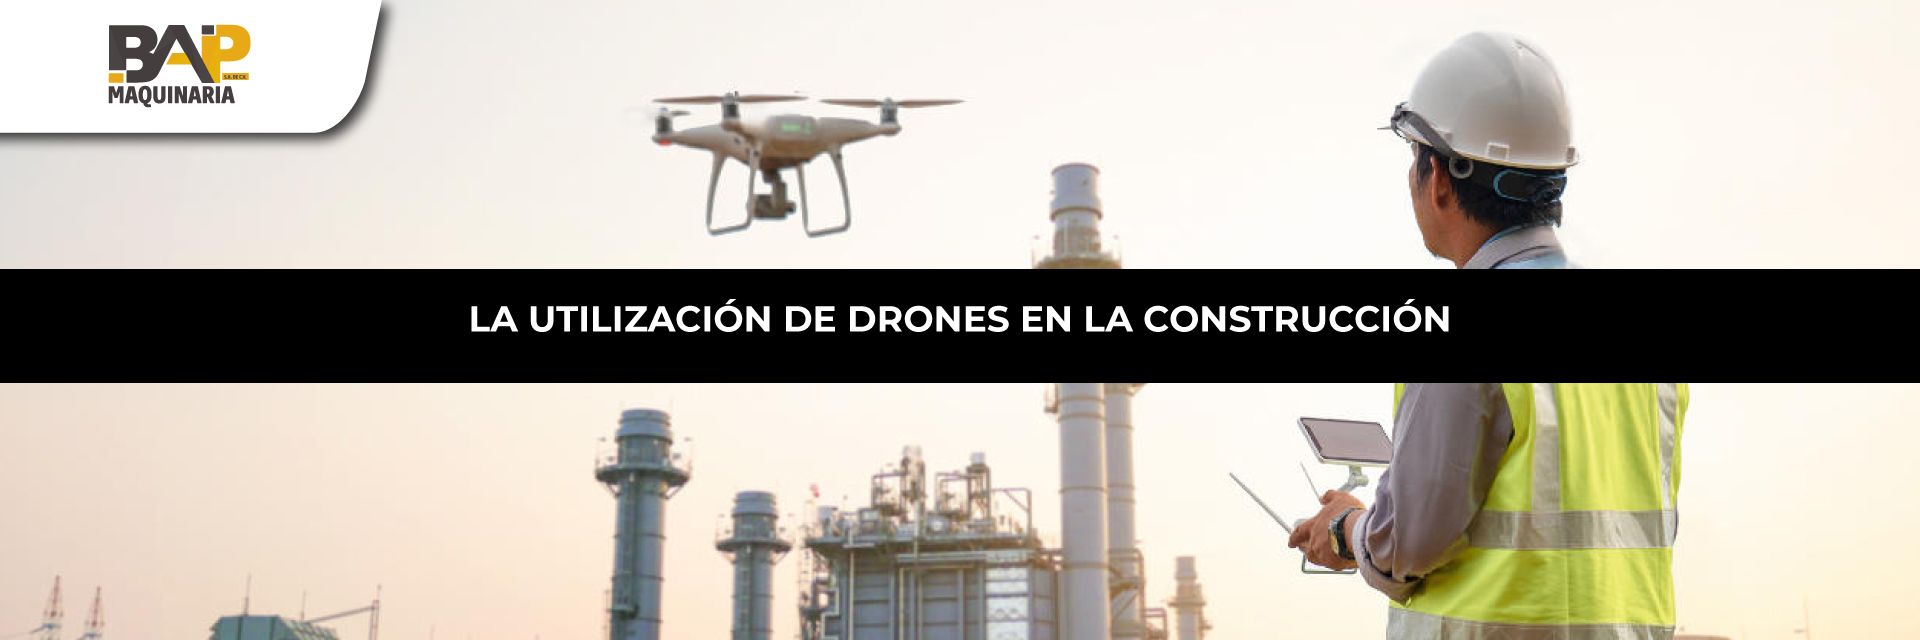 Drones en la Industria de la Construcción. BAP Maquinaria